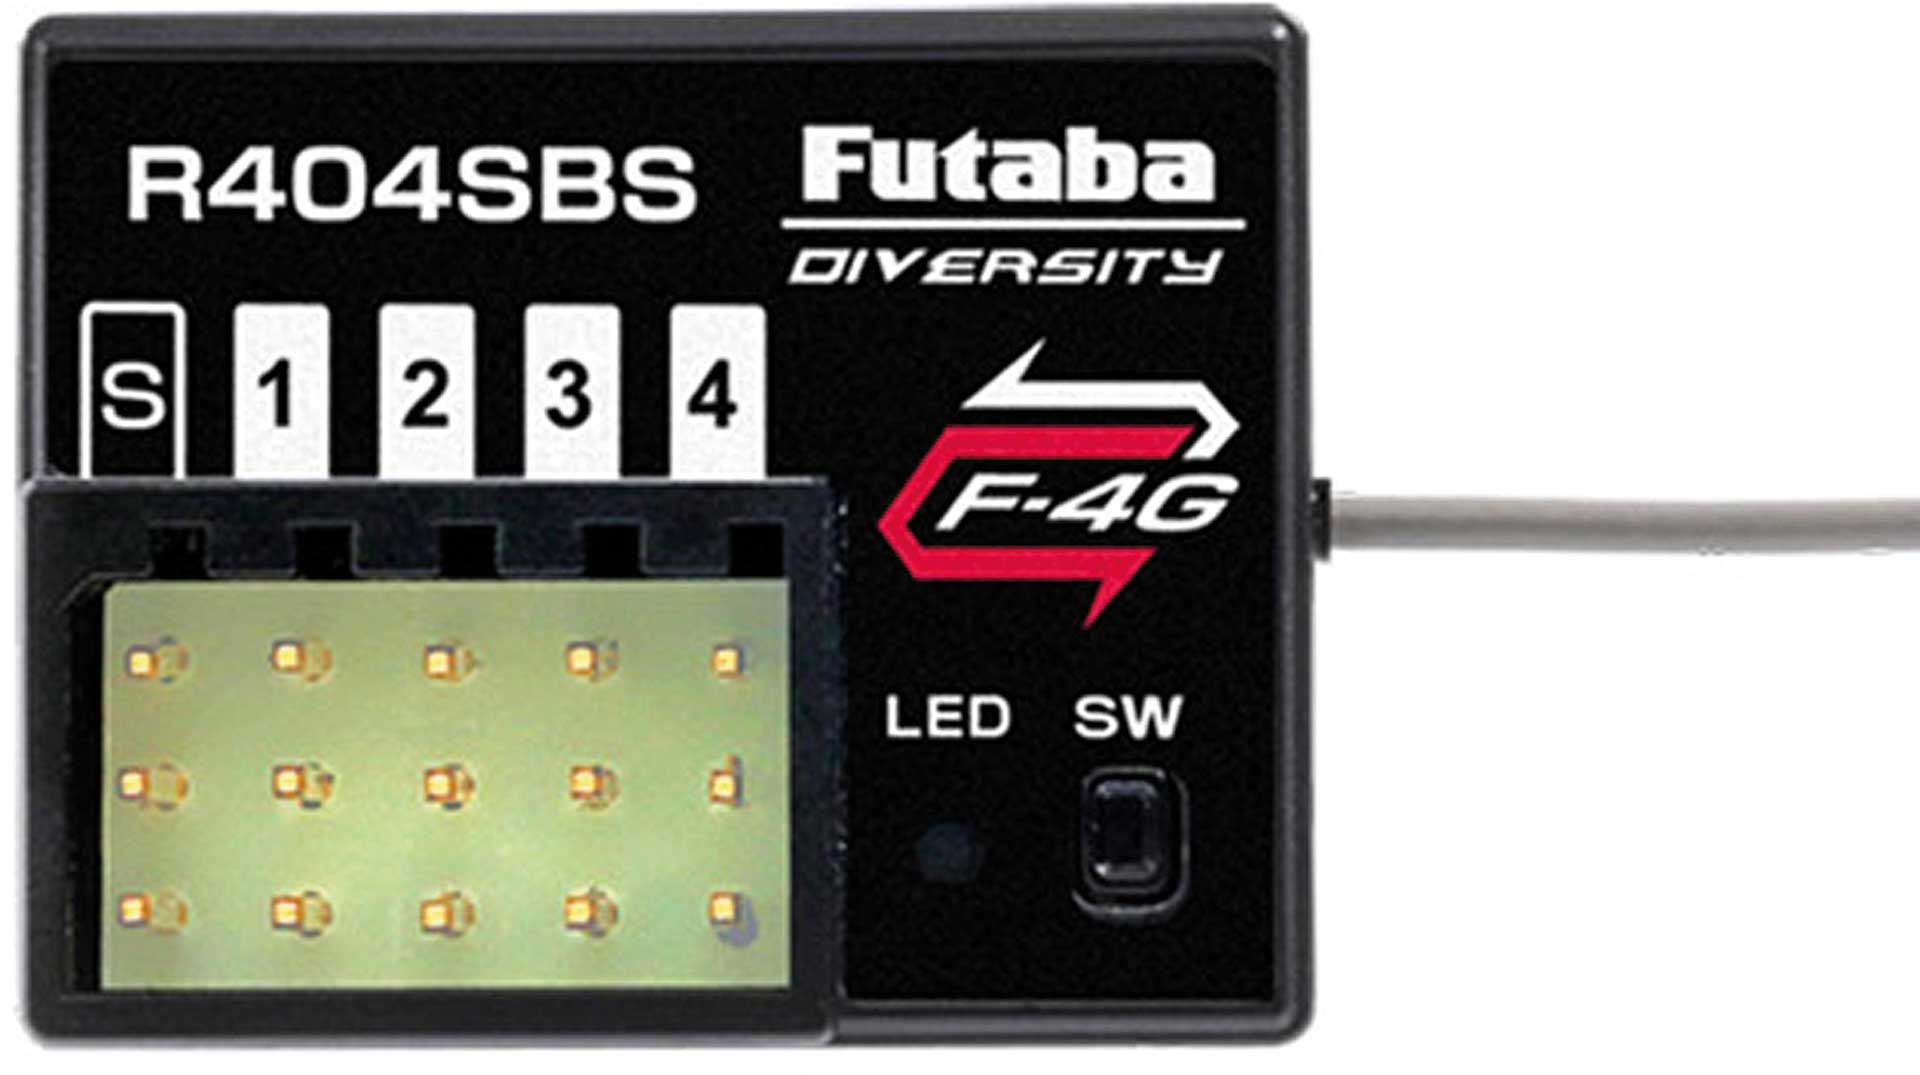 FUTABA T10PX + R404SBS 10-Kanal Profi Car- Fernsteuerung mit F-4G, SR